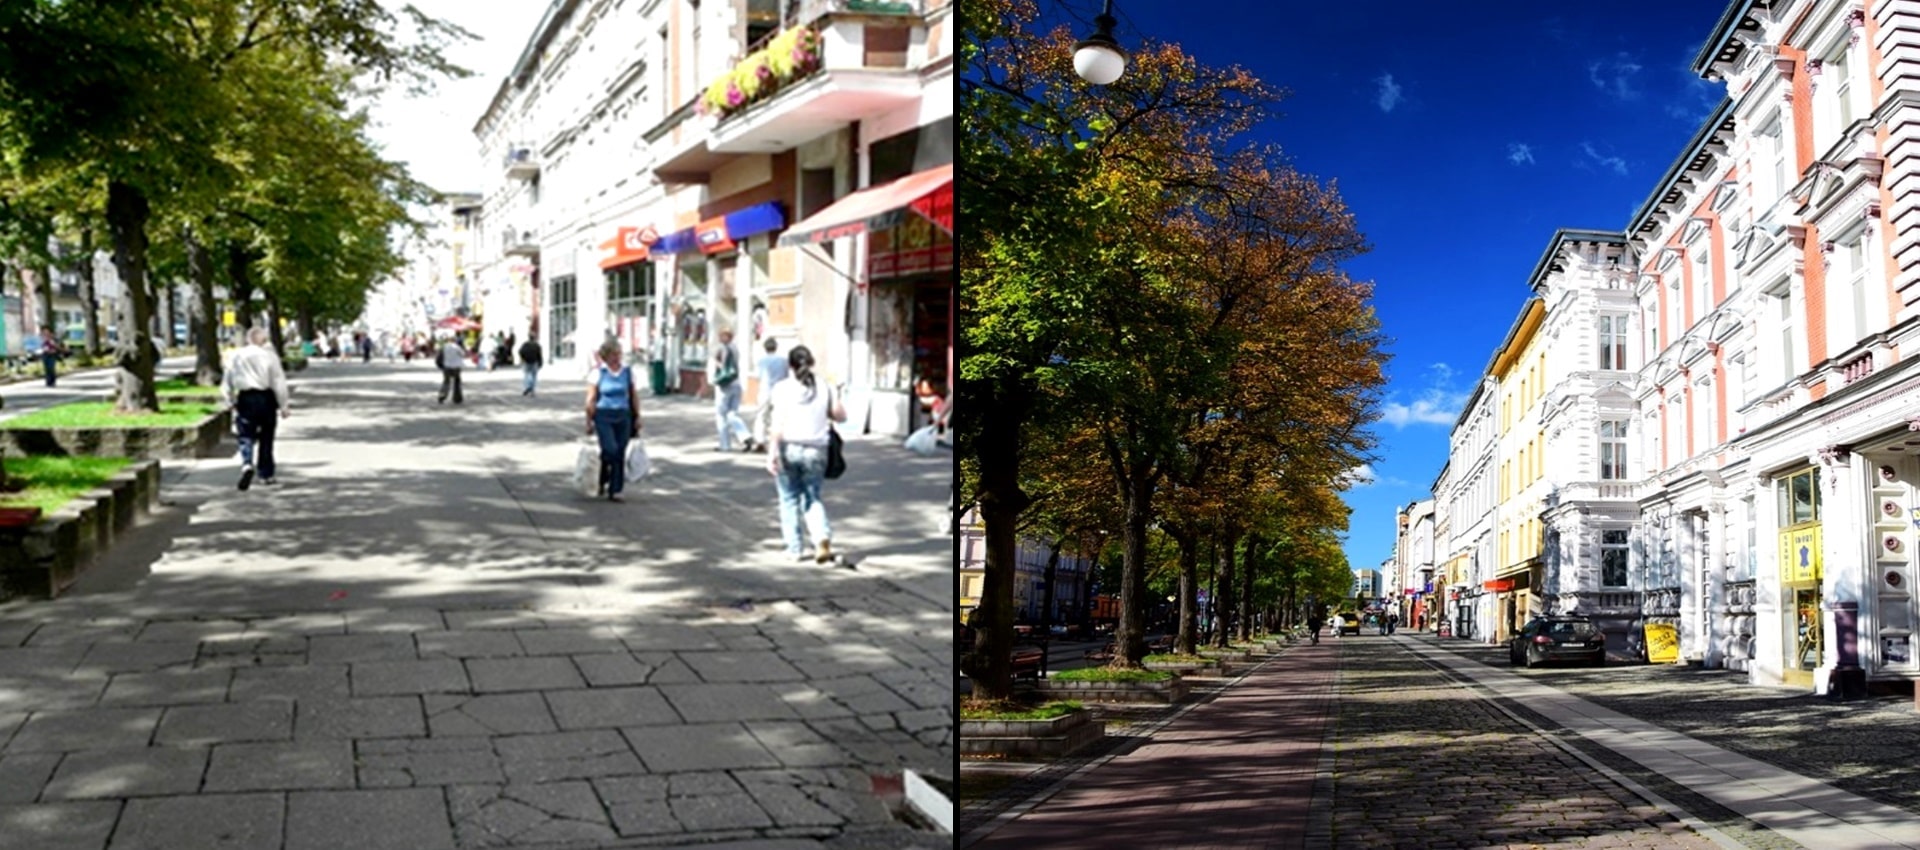 Dwa połączone ze sobą zdjęcia, na zdjęciu po lewej stronie ciąg pieszy z przechodzącymi po nim ludźmi, a po prawej stronie wyremontowany ciąg po remoncie